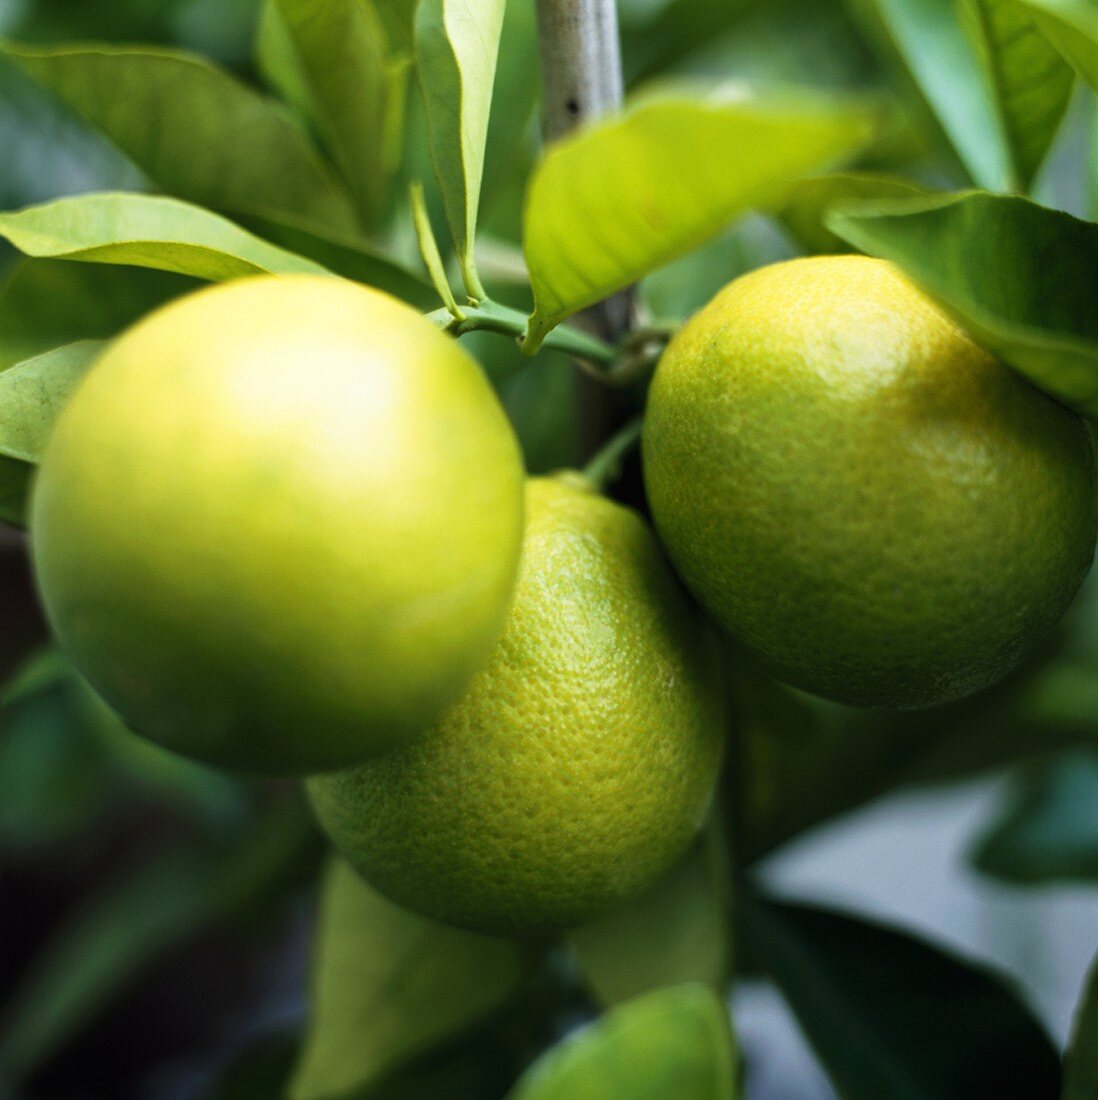 Lemons on the tree (close-up)